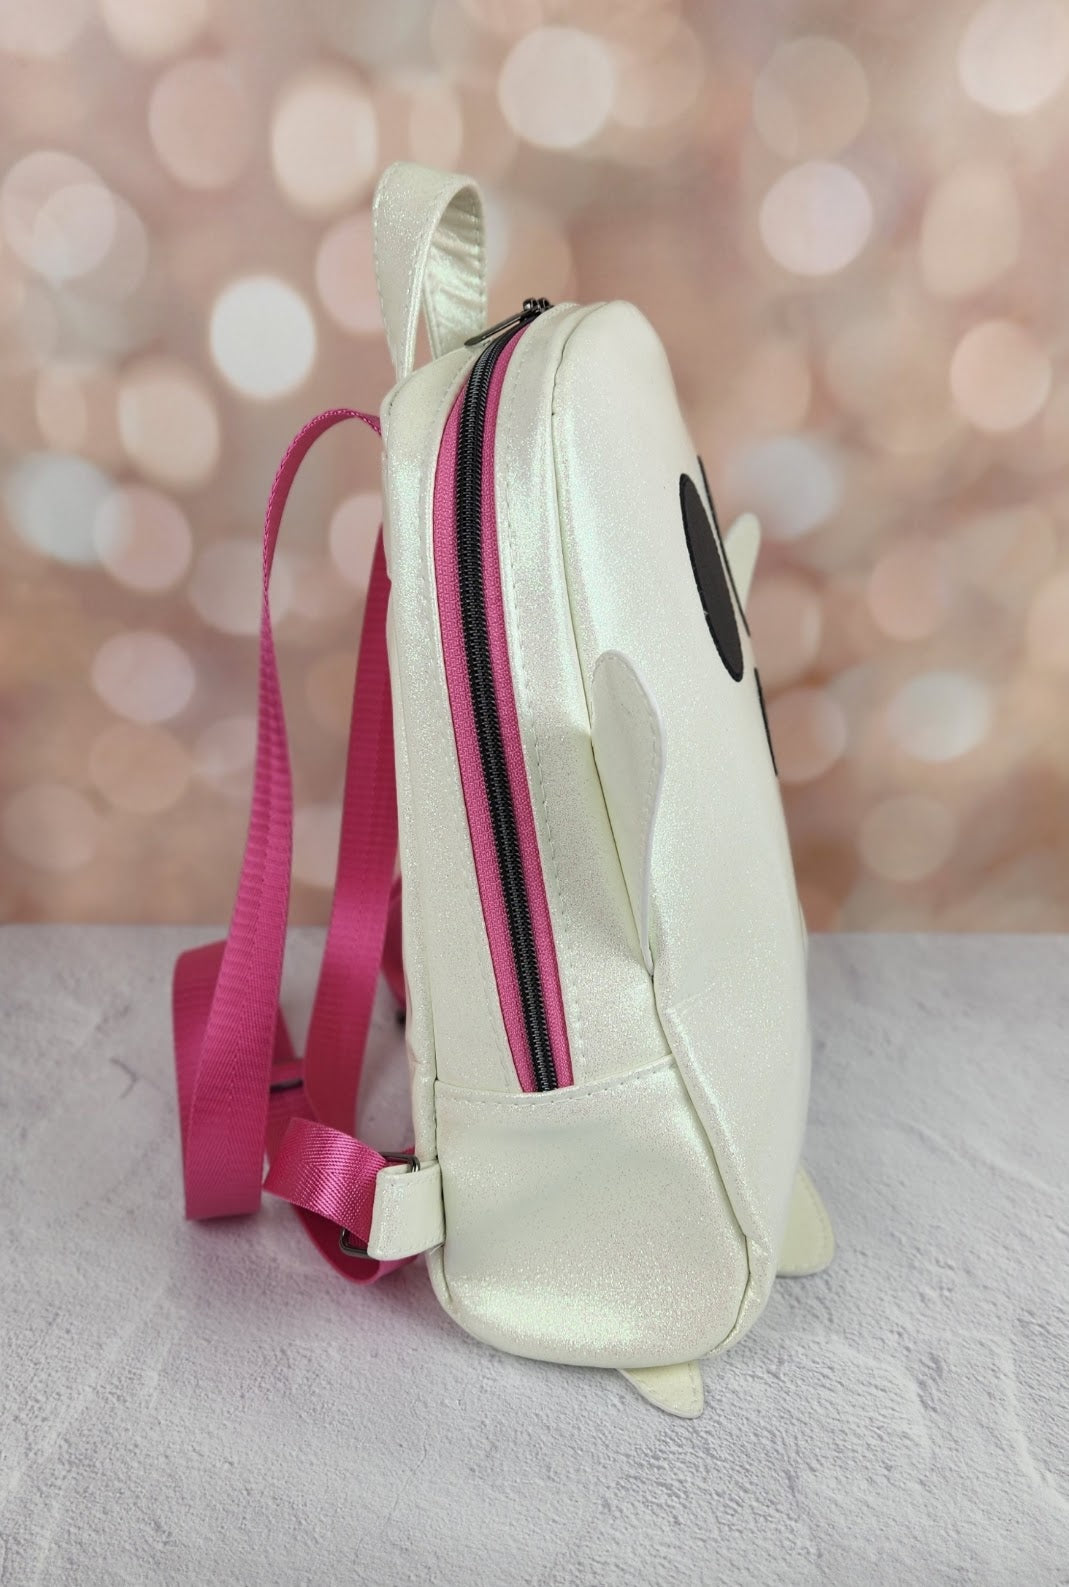 Sewing Ghost Bag Charm / Keychain – SewCraftDee